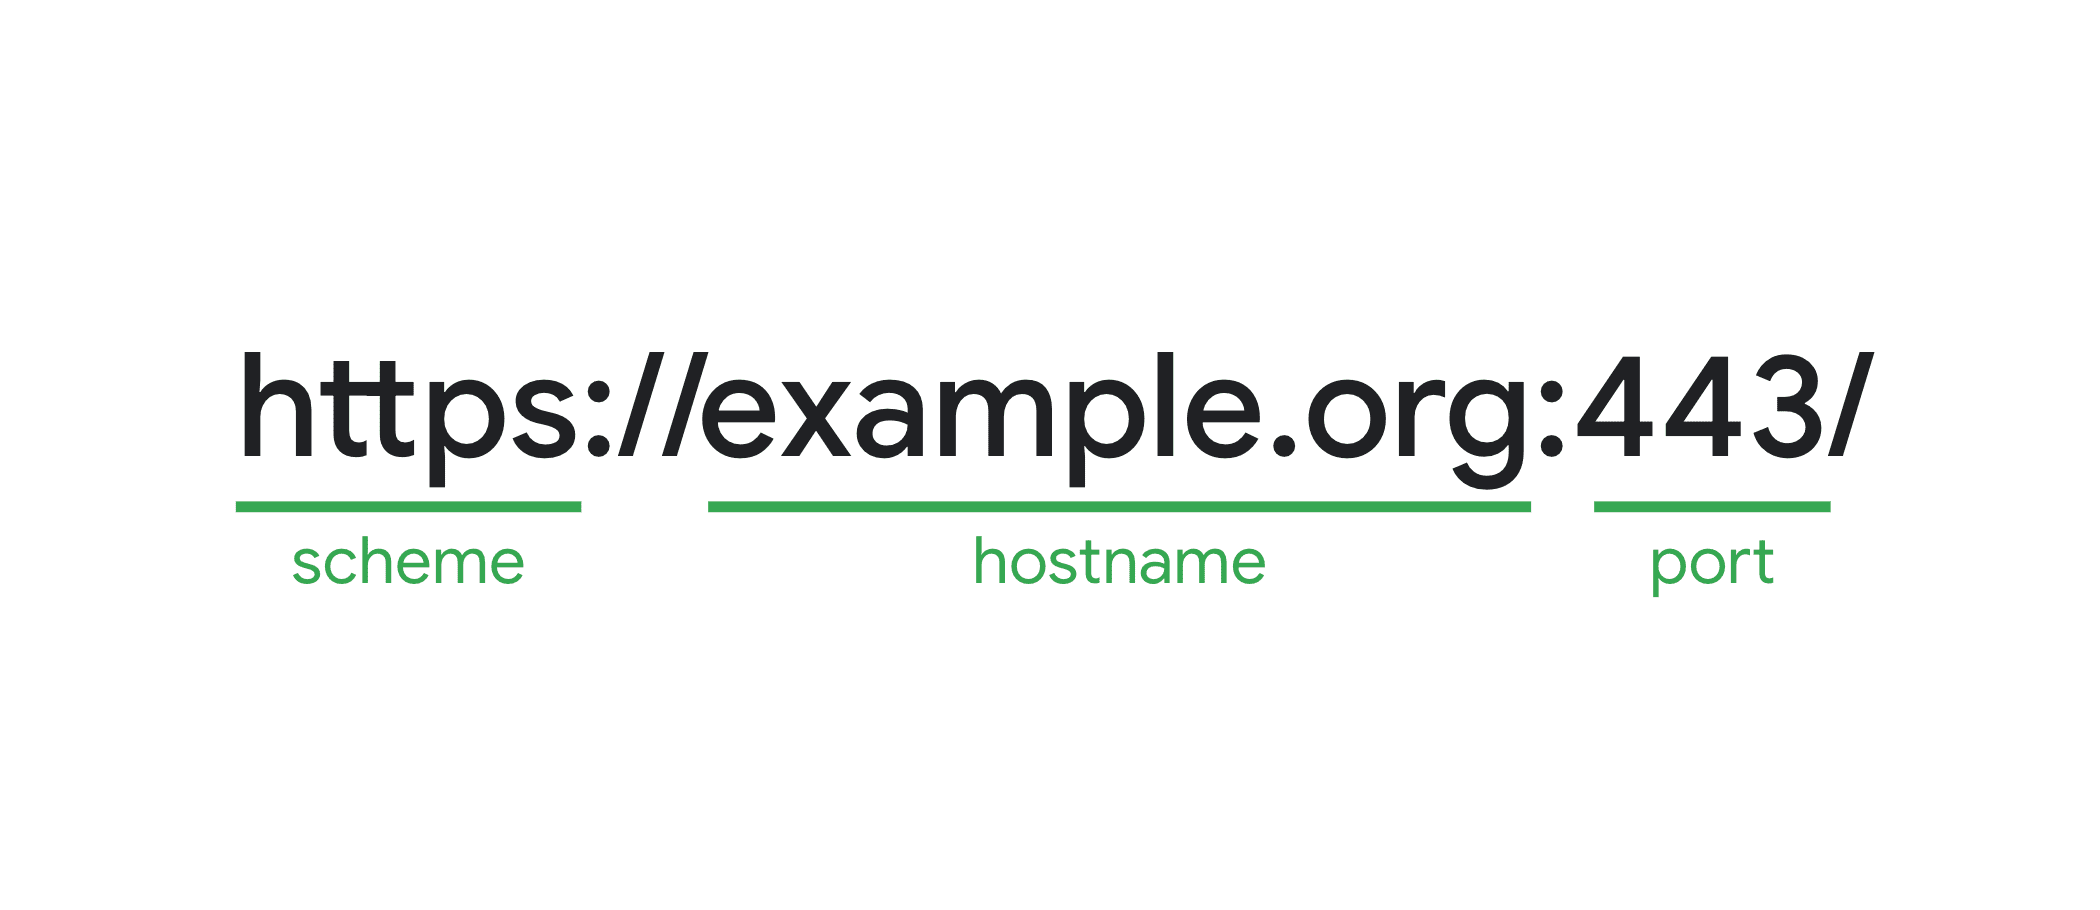 یک URL مثال با طرح، نام میزبان و پورت برجسته شده است. با هم، آنها منشاء را تشکیل می دهند.